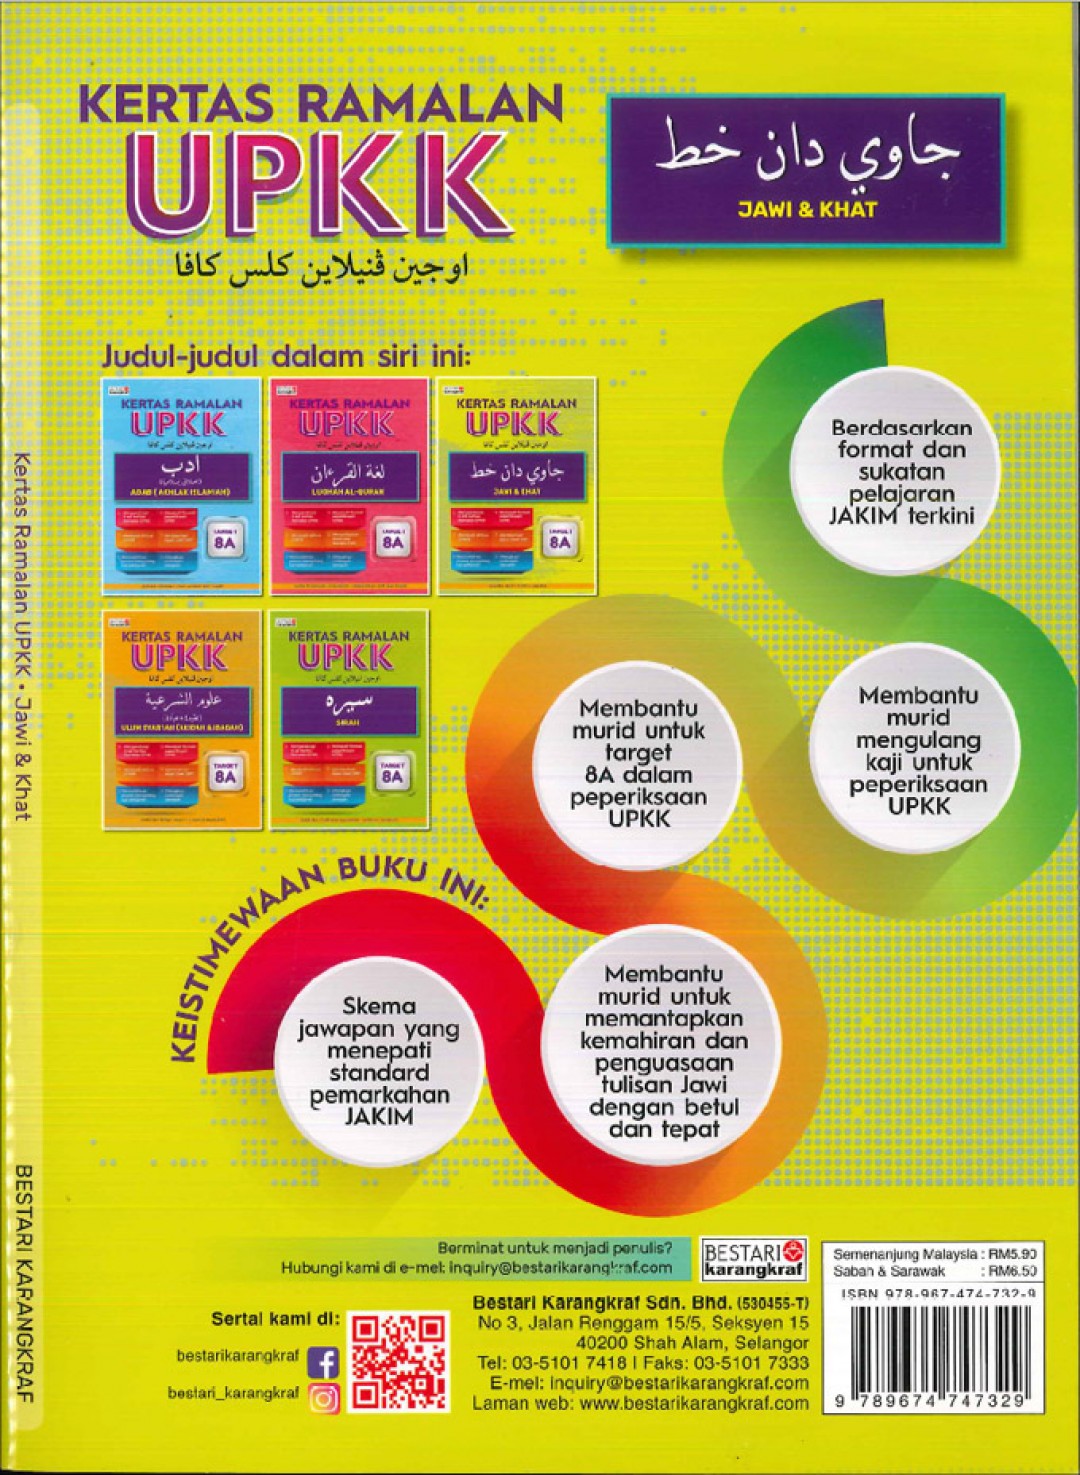 Kertas Ramalan UPKK - (Jawi & Khat) Terbitan tahun 2020